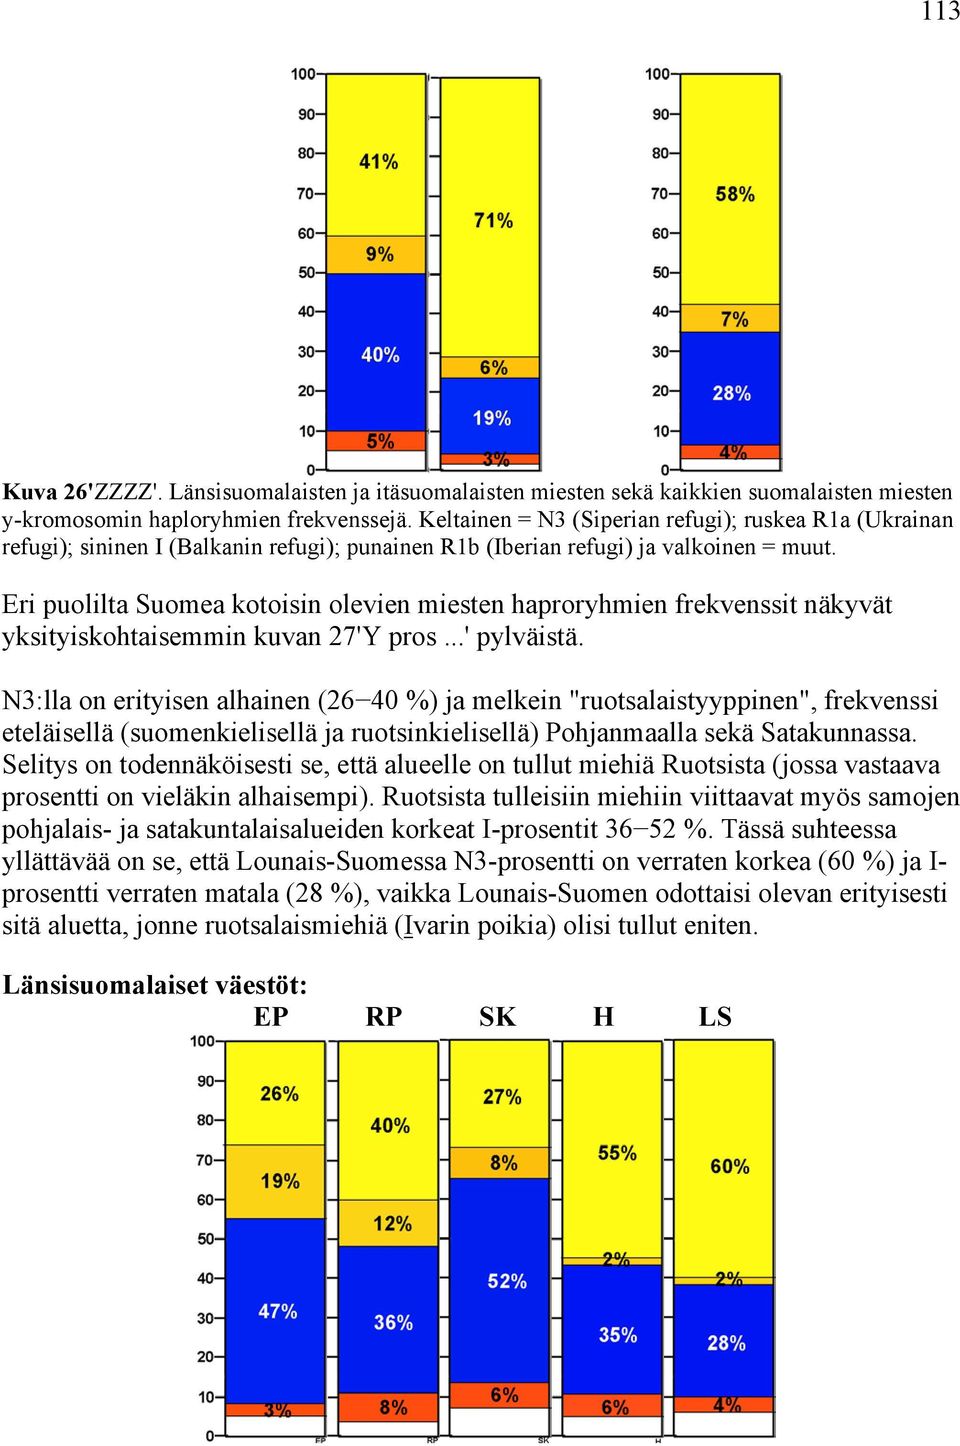 Eri puolilta Suomea kotoisin olevien miesten haproryhmien frekvenssit näkyvät yksityiskohtaisemmin kuvan 27'Y pros...' pylväistä.